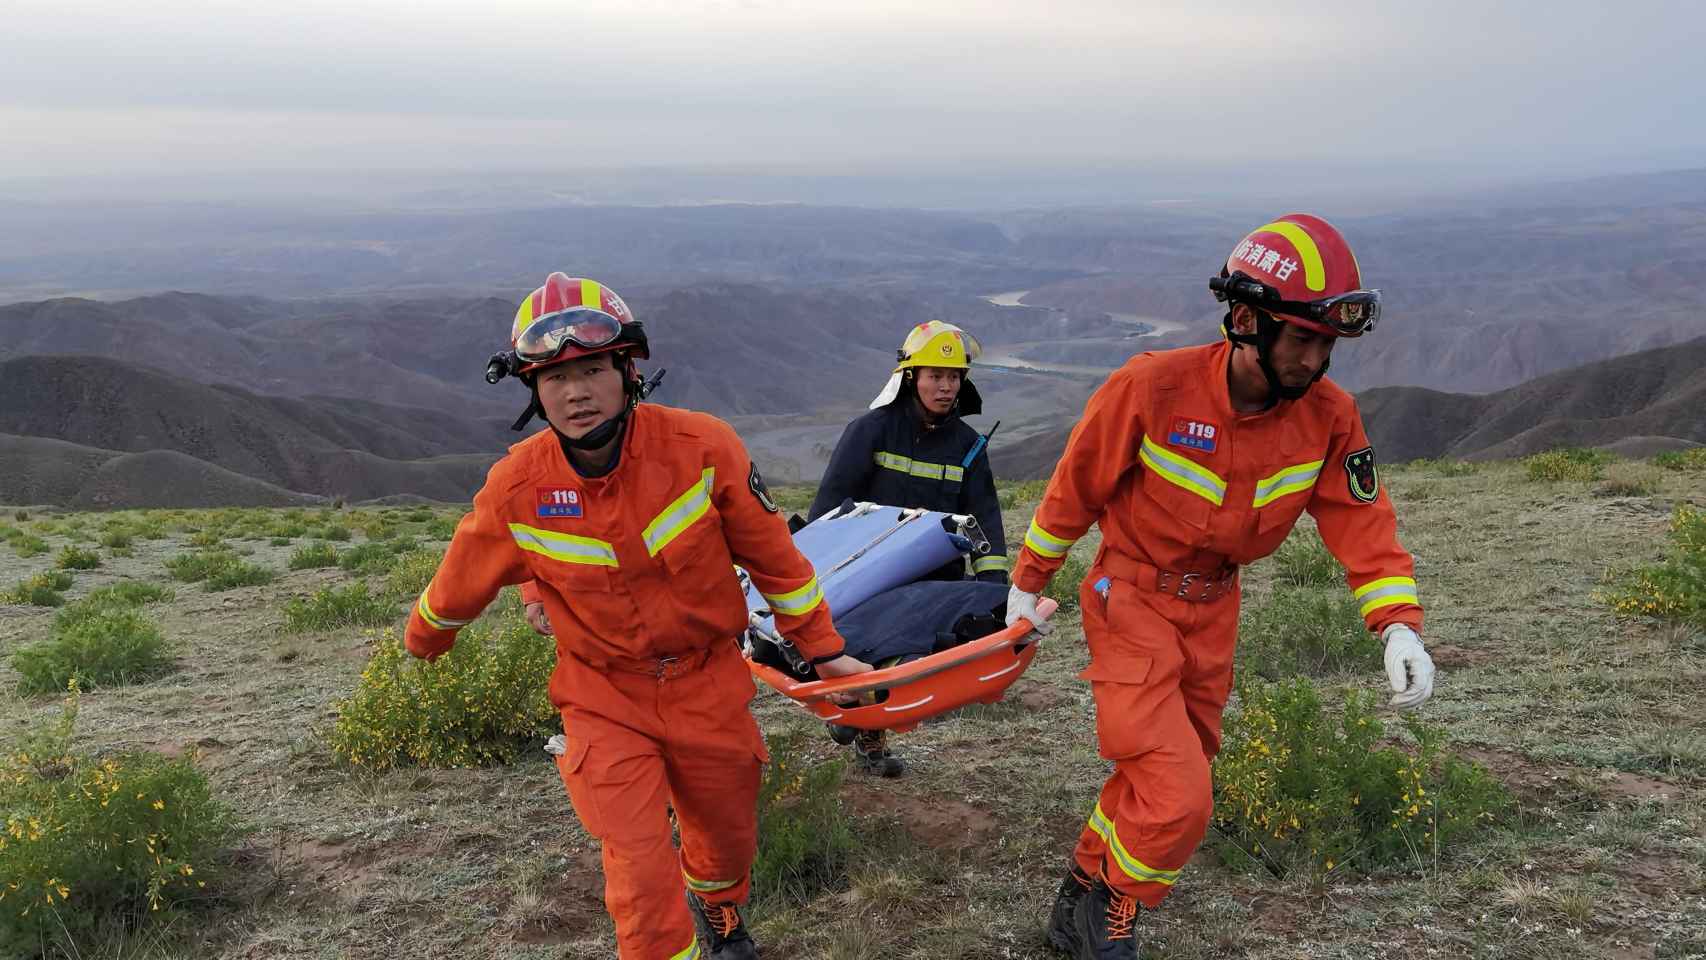 Los servicios de emergencias rescatan a uno de los corredores que murieron por frío en una Ultramaratón de montaña en China